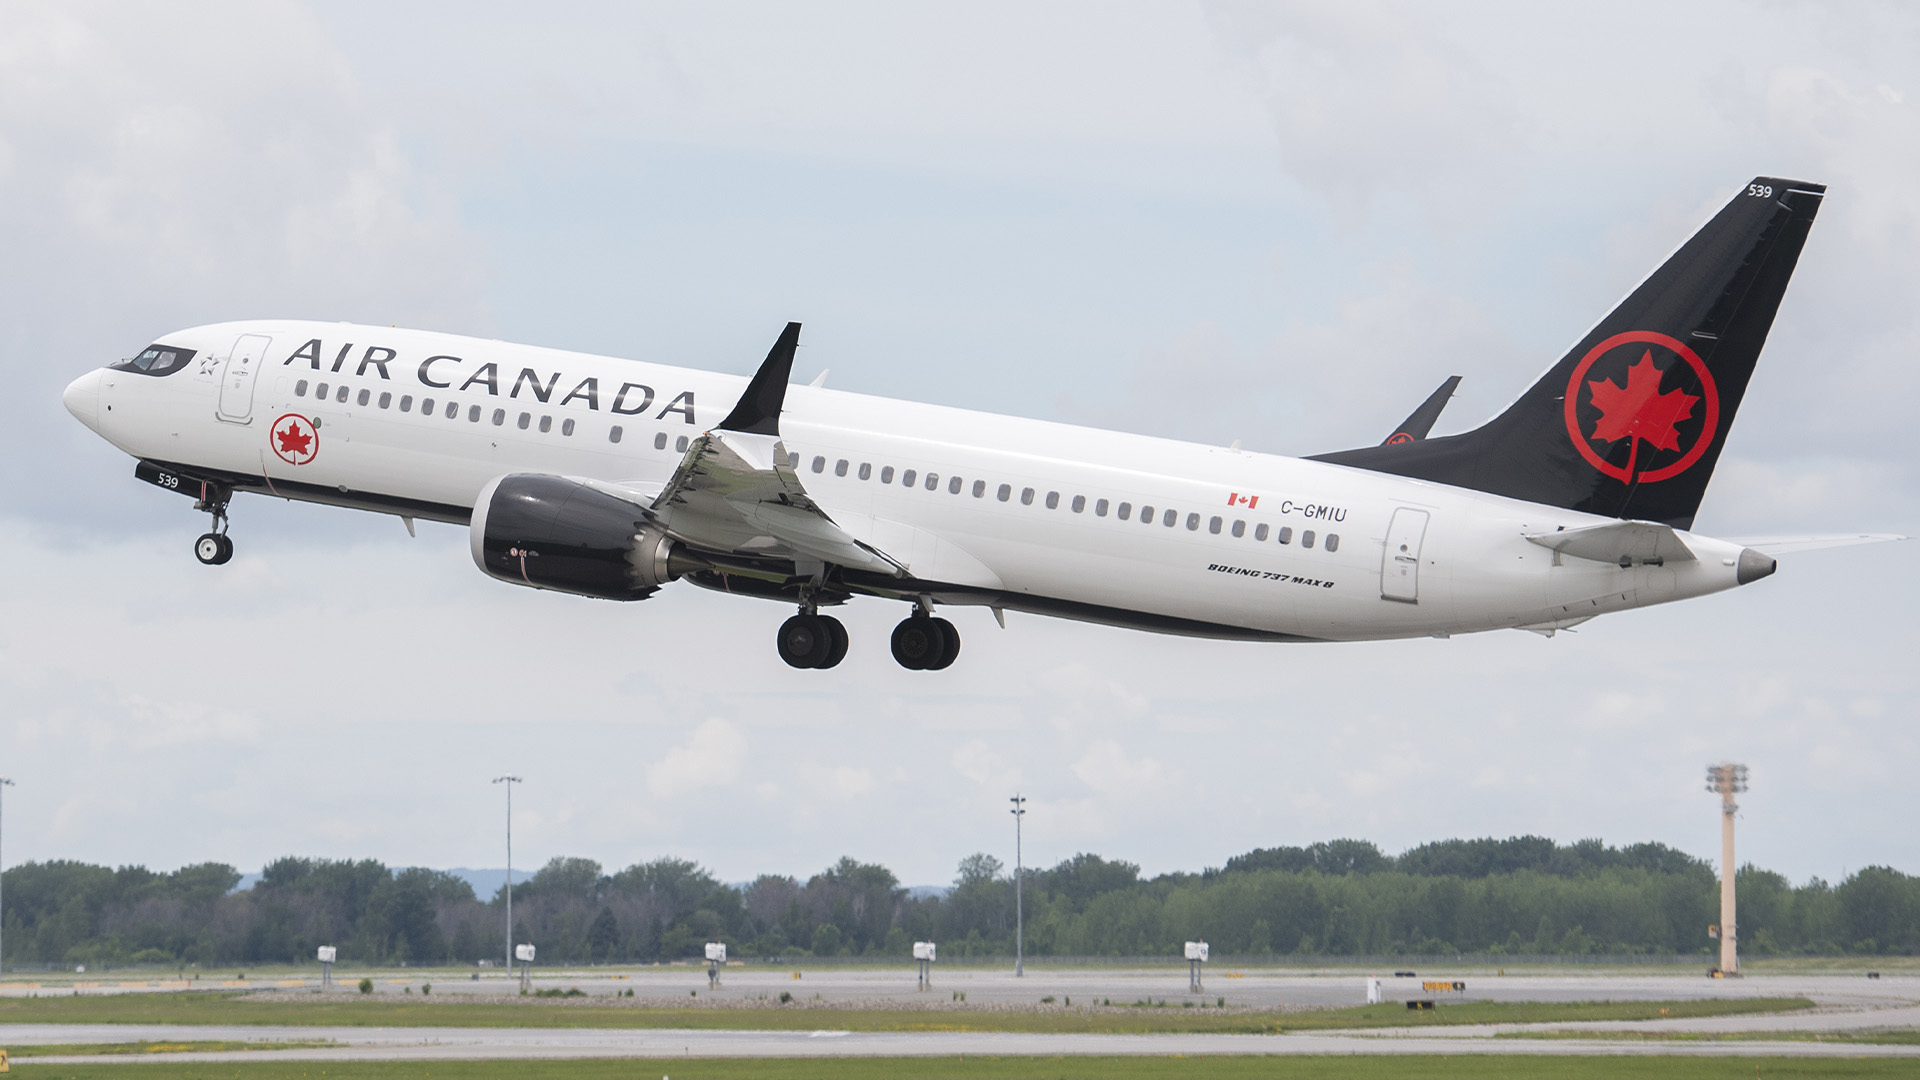 La plus grande compagnie aérienne du Canada a effectué 51 % de ses vols à l'heure le mois dernier, selon les chiffres de la société de données aéronautiques Cirium.